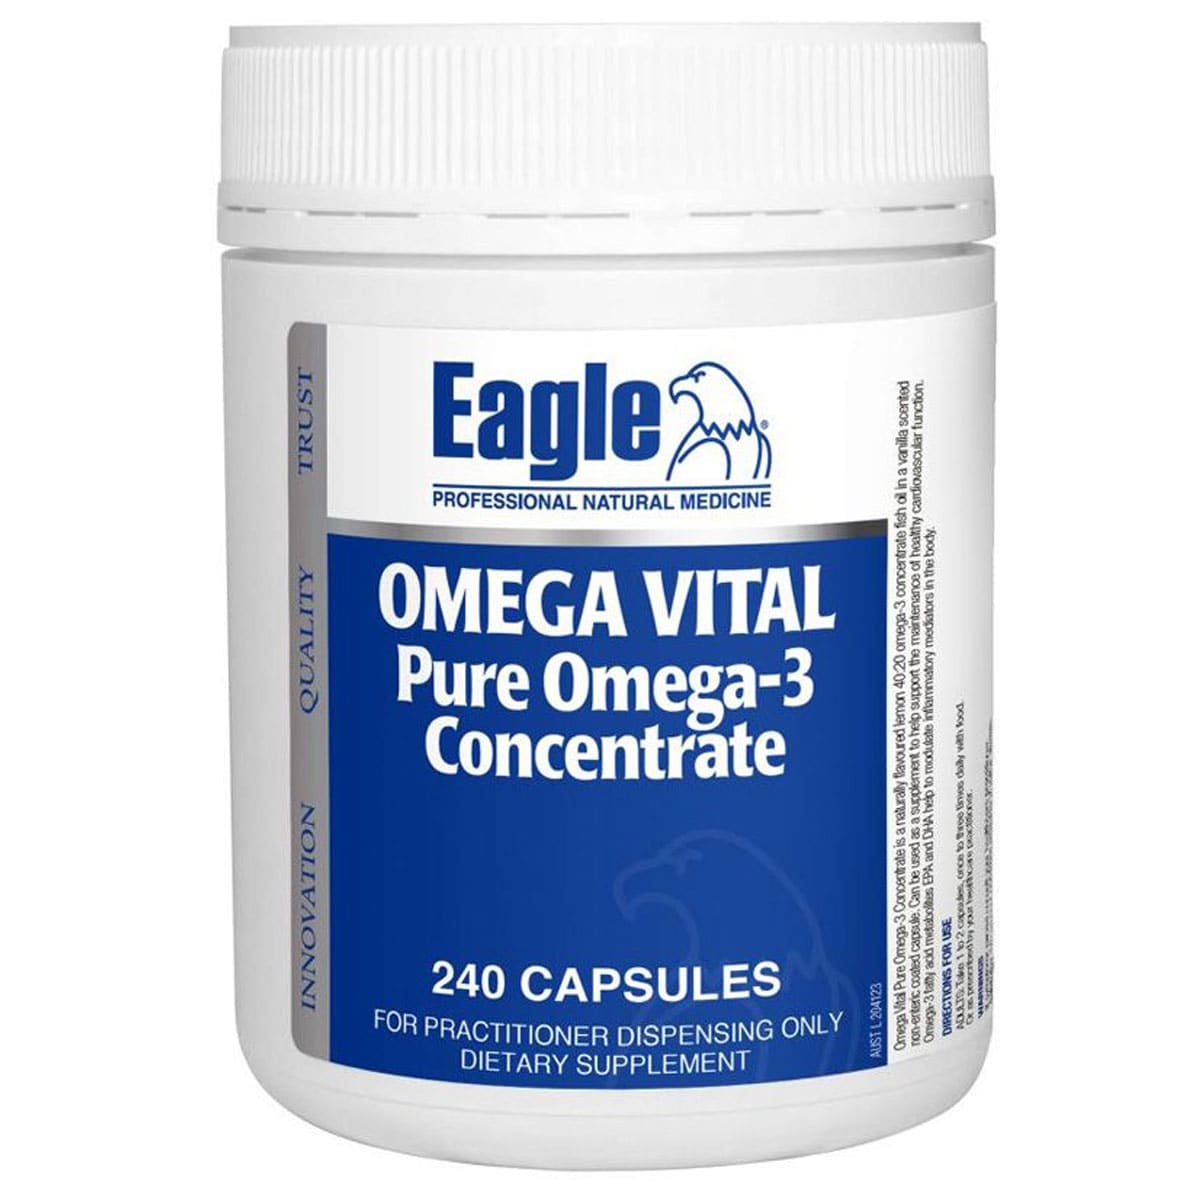 Eagle Omega Vital Pure Omega 3 Concentrate 240 Capsules